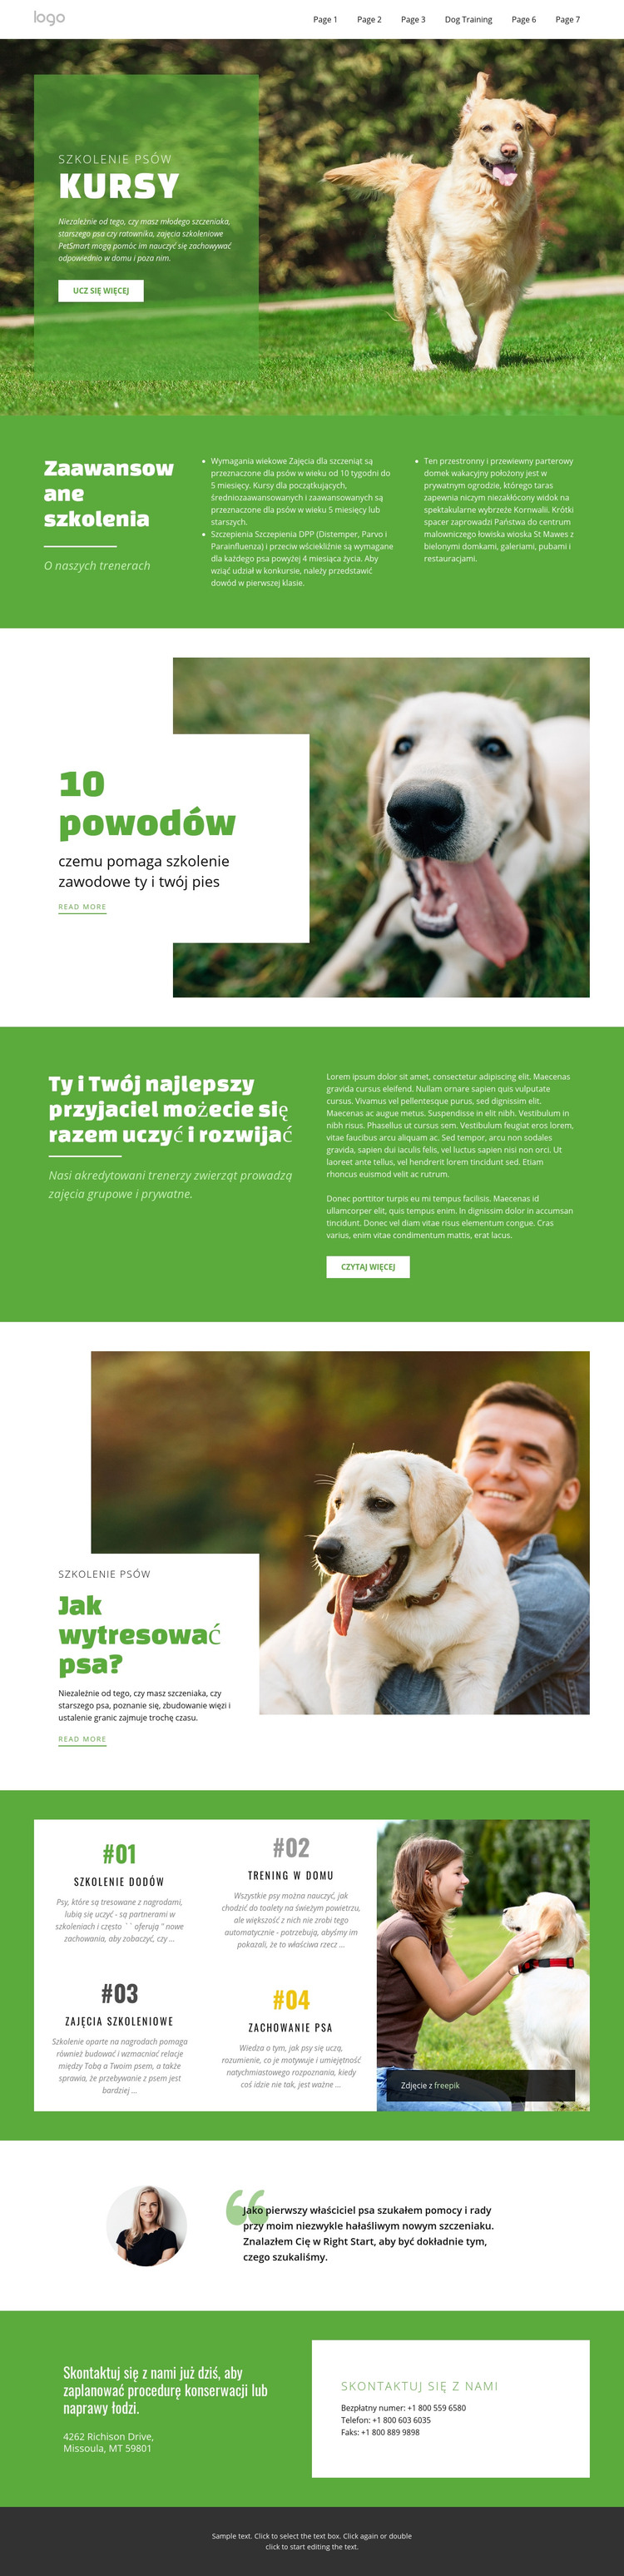 Kursy szkoleniowe dla zwierząt domowych Szablon HTML